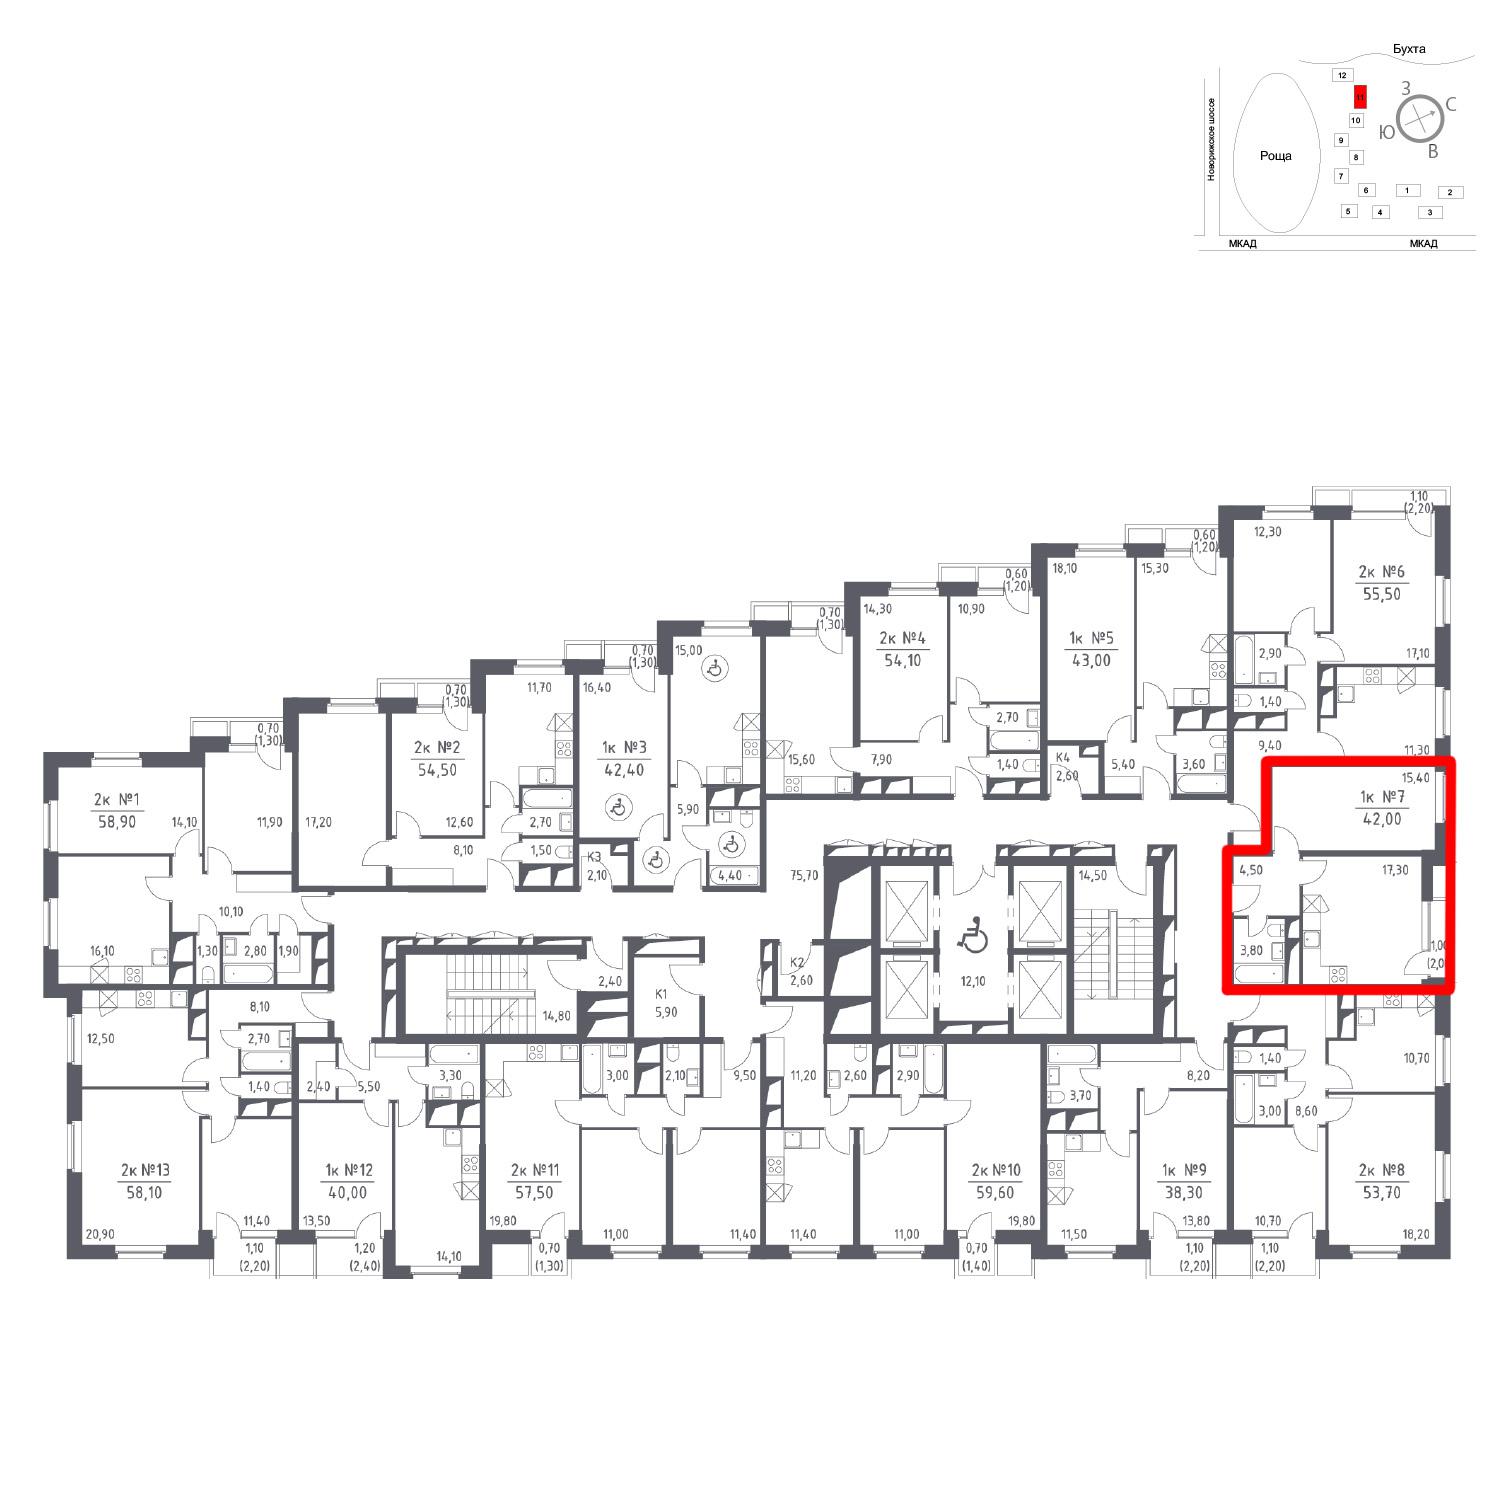 Продаётся 1-комнатная квартира в новостройке 42.0 кв.м. этаж 13/33 за 0 руб 